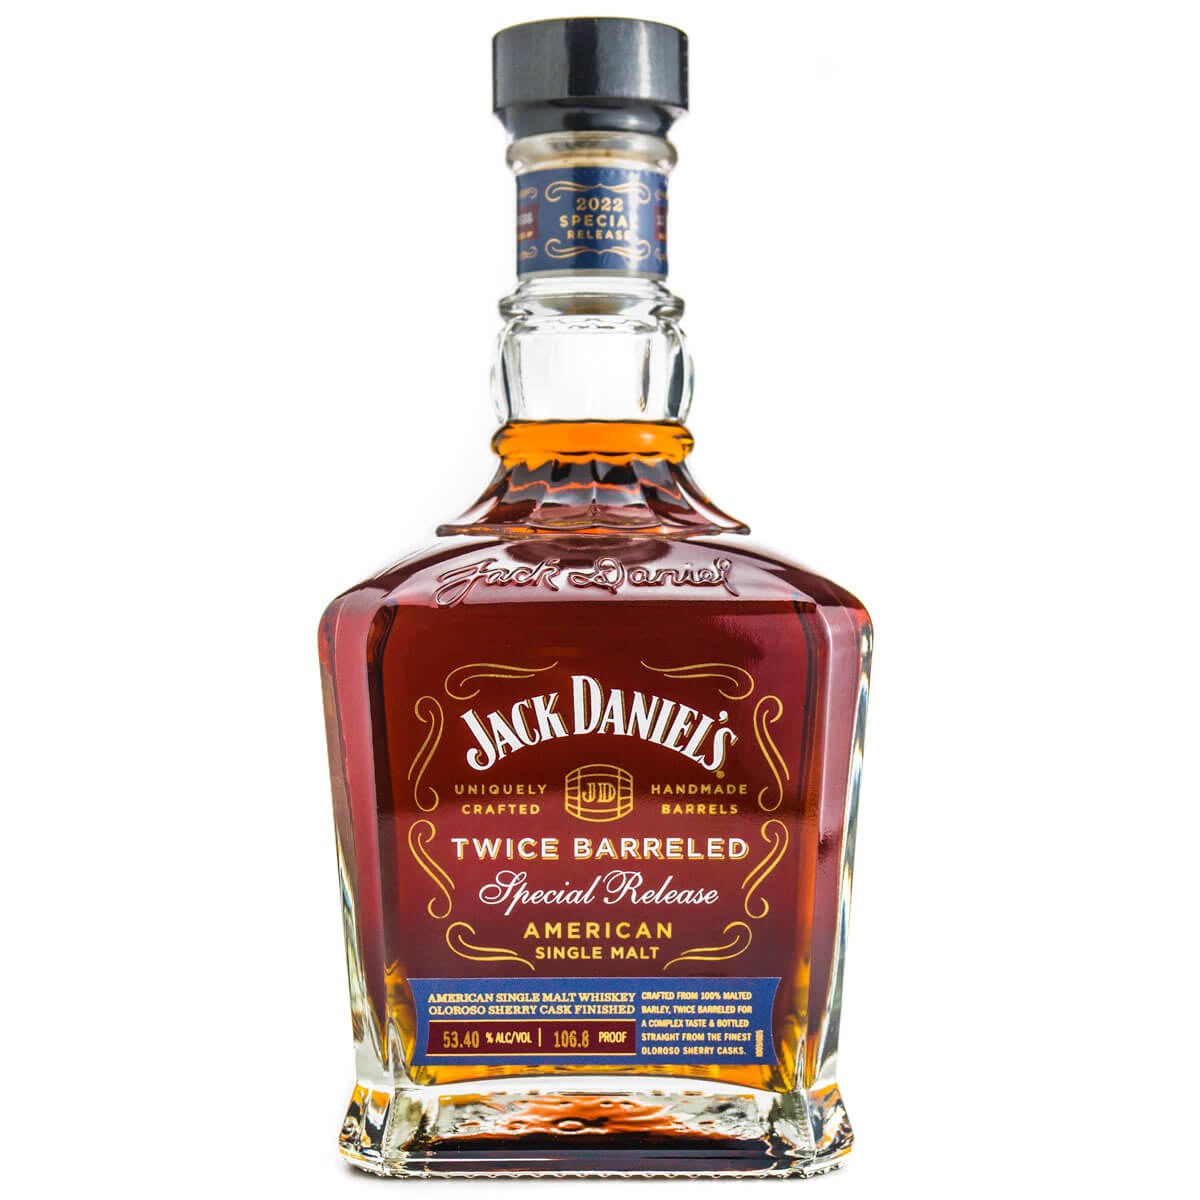 Jack Daniel’s Twice Barr bottleeled Special Release American Single Malt